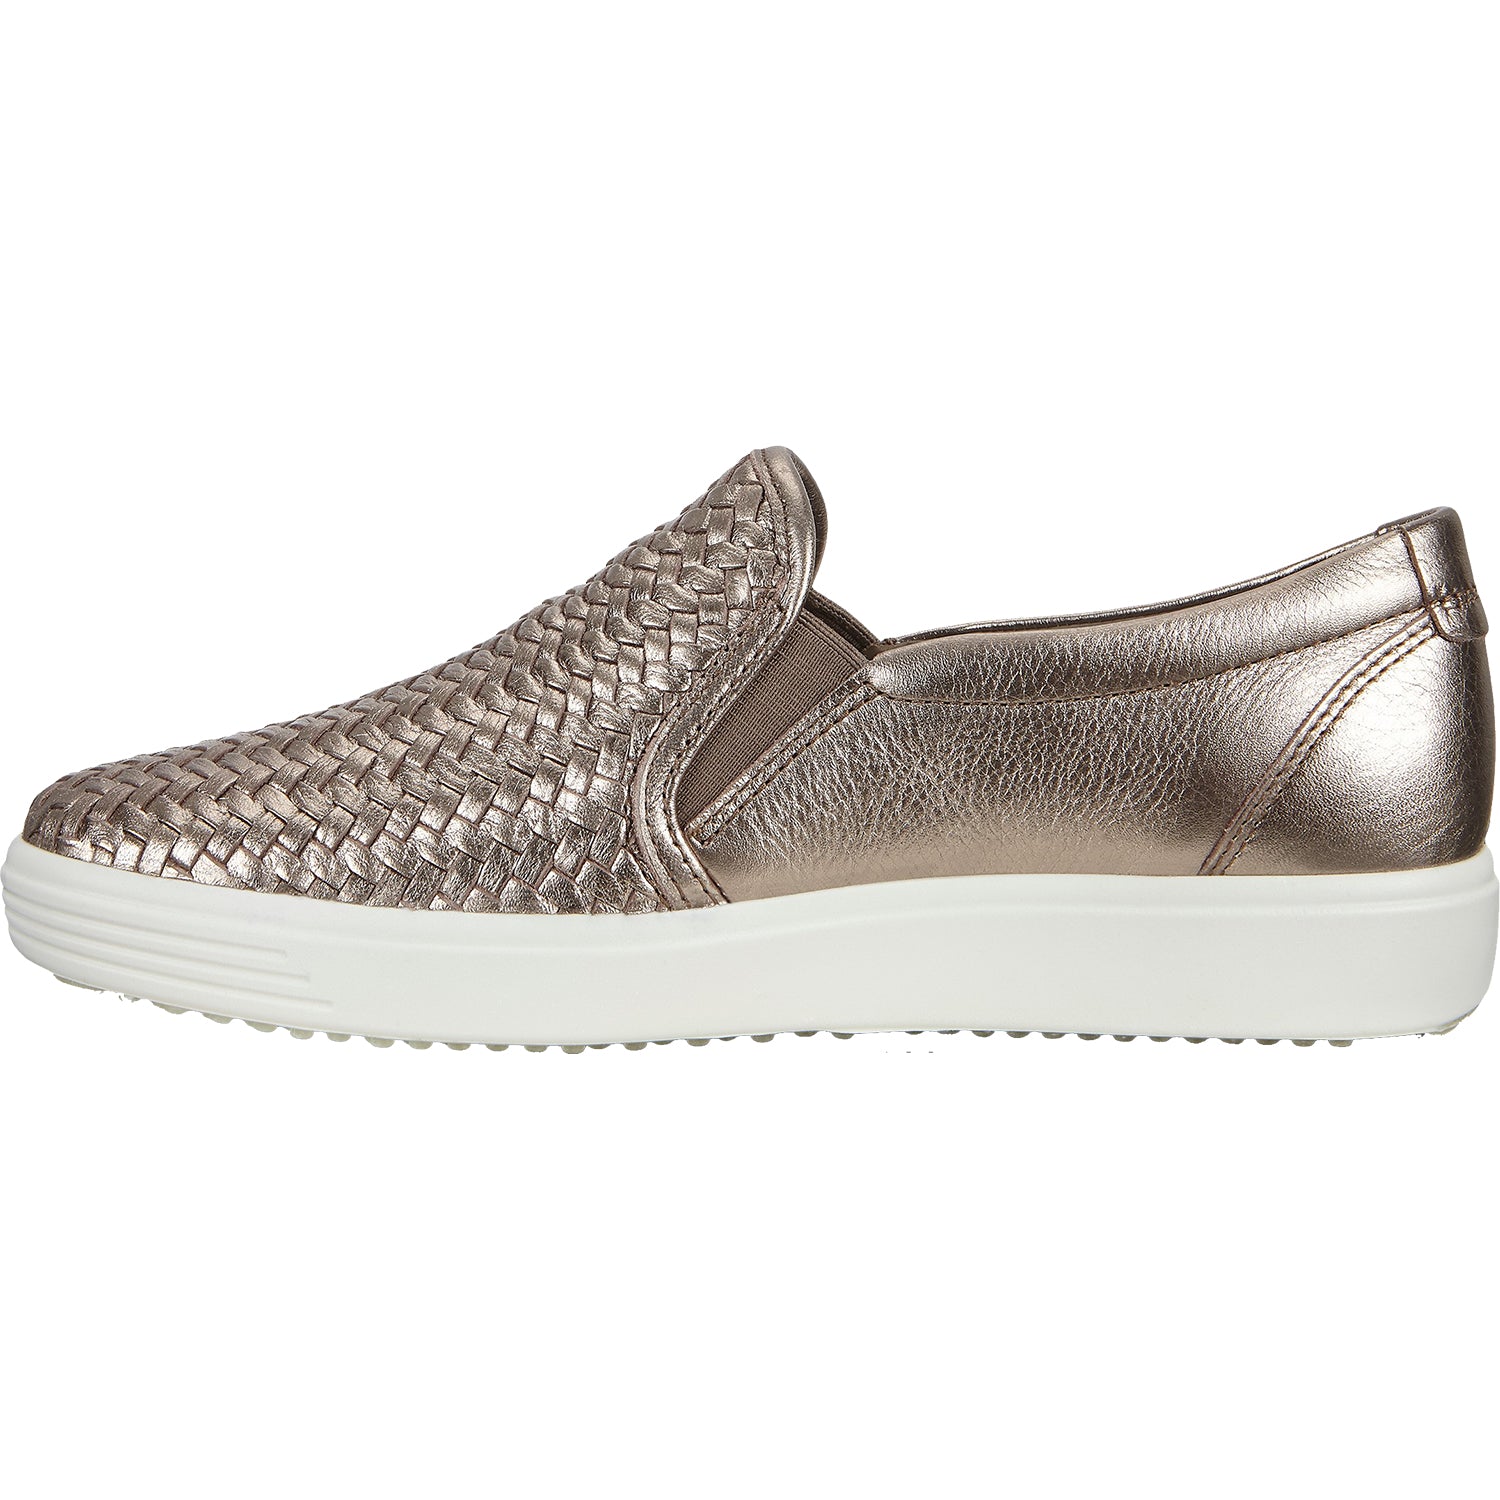 Ecco Soft 7 Woven Slip On Stone | Women's Sneakers | Footwear etc.